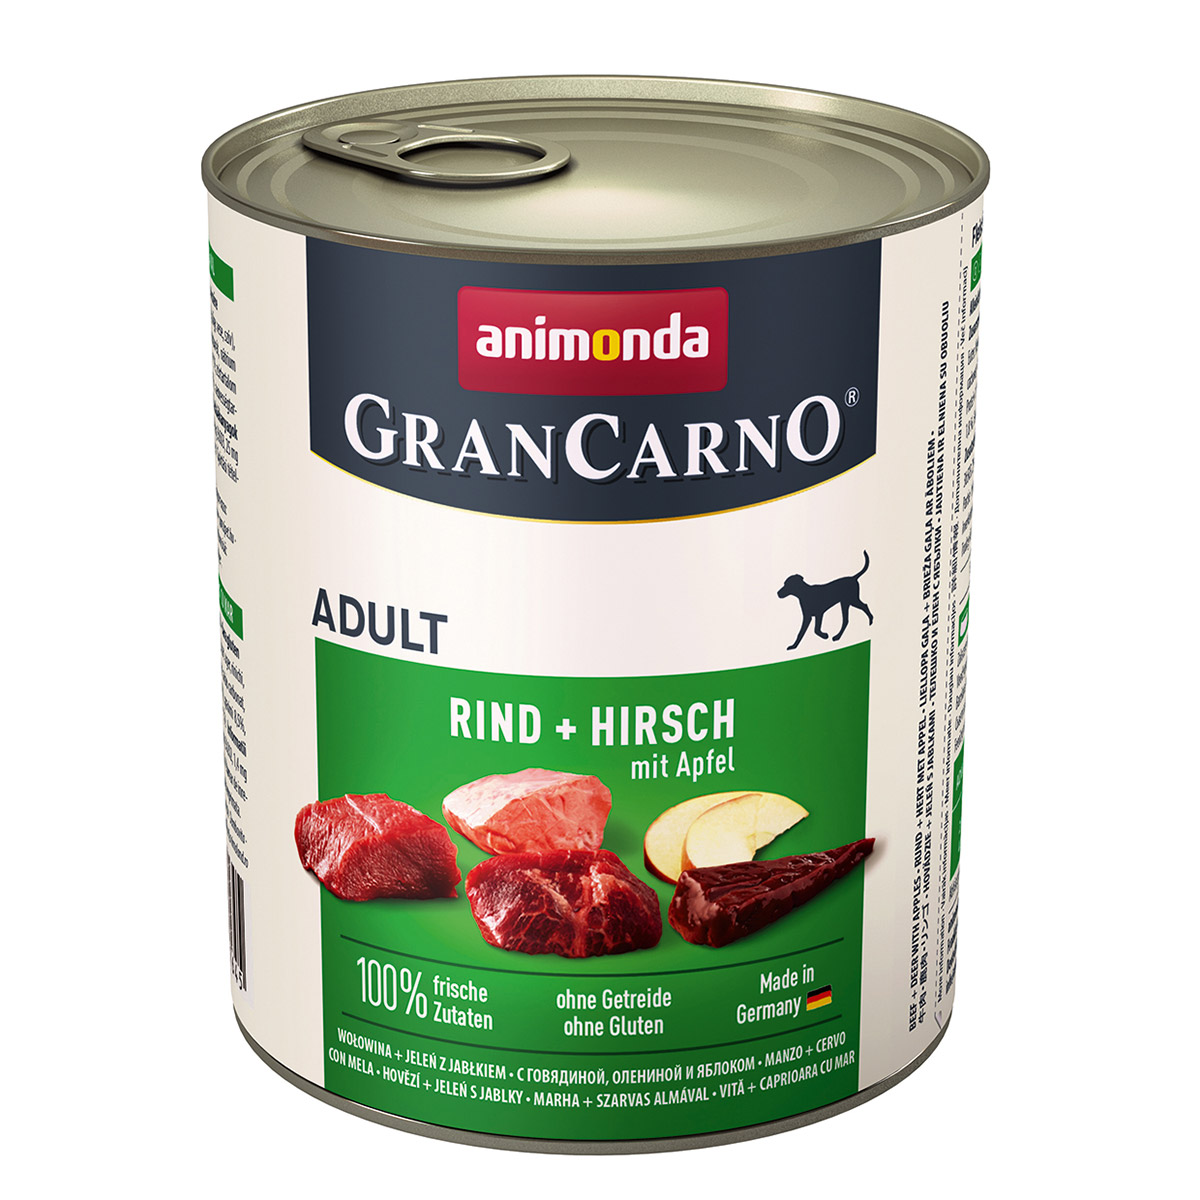 Animonda GranCarno Adult hovězím a jelením maso s jablky 6x800g